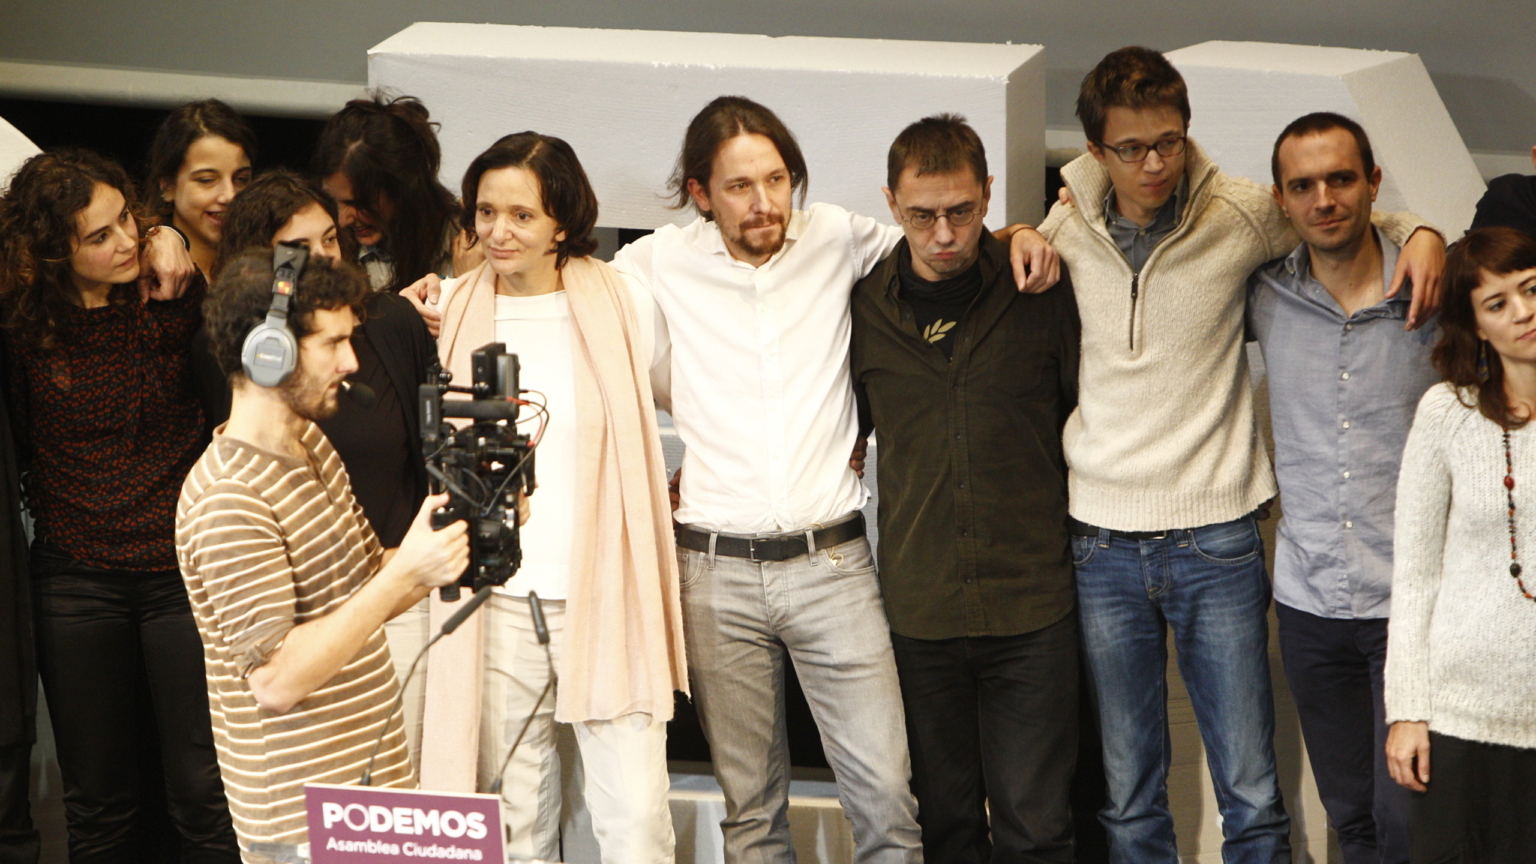 Una productora española prepara una serie de ficción sobre el auge y caída de Podemos